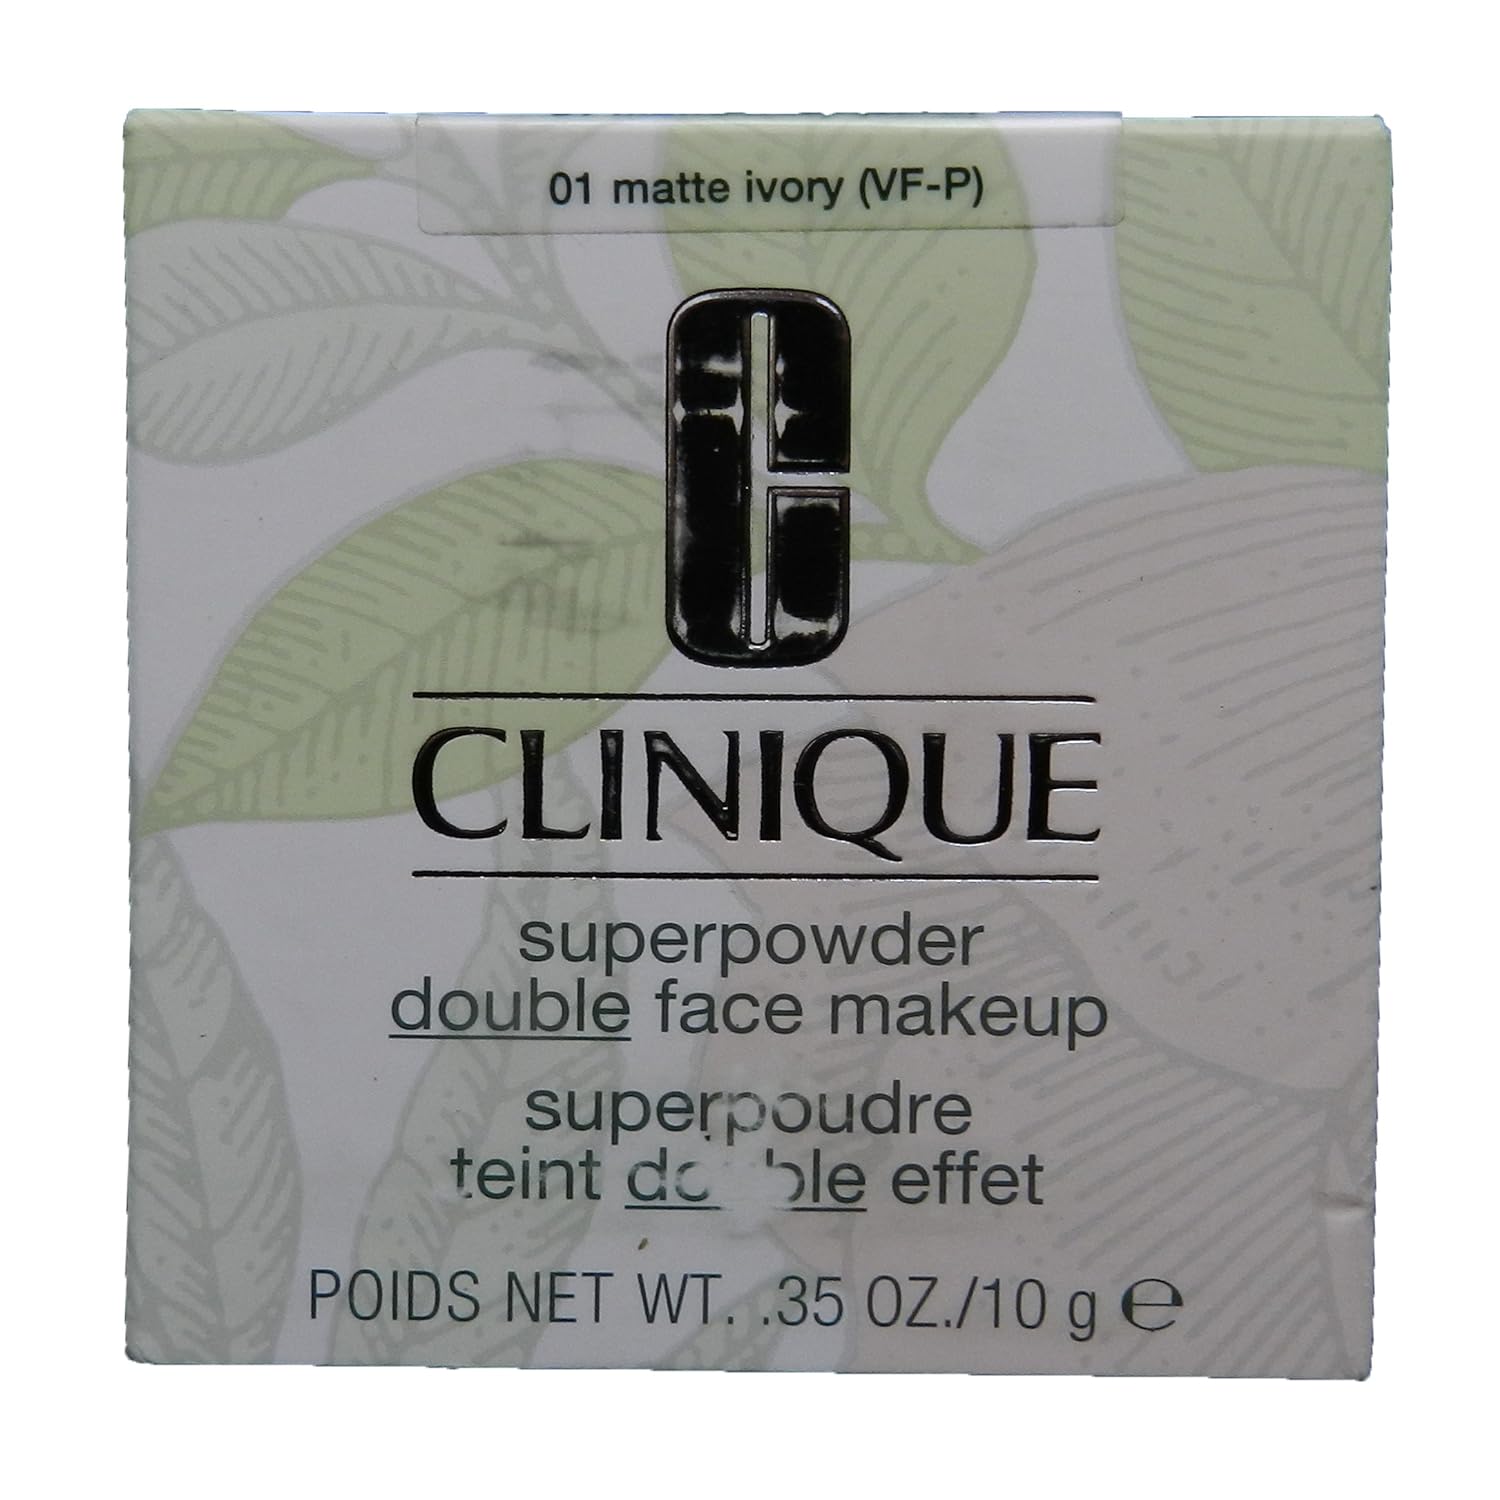  Clinique Superpowder Double Face Makeup - 01 Matte Ivory Vf-P By Clinique For Women - 0.35 Oz Powder 0.35 oz